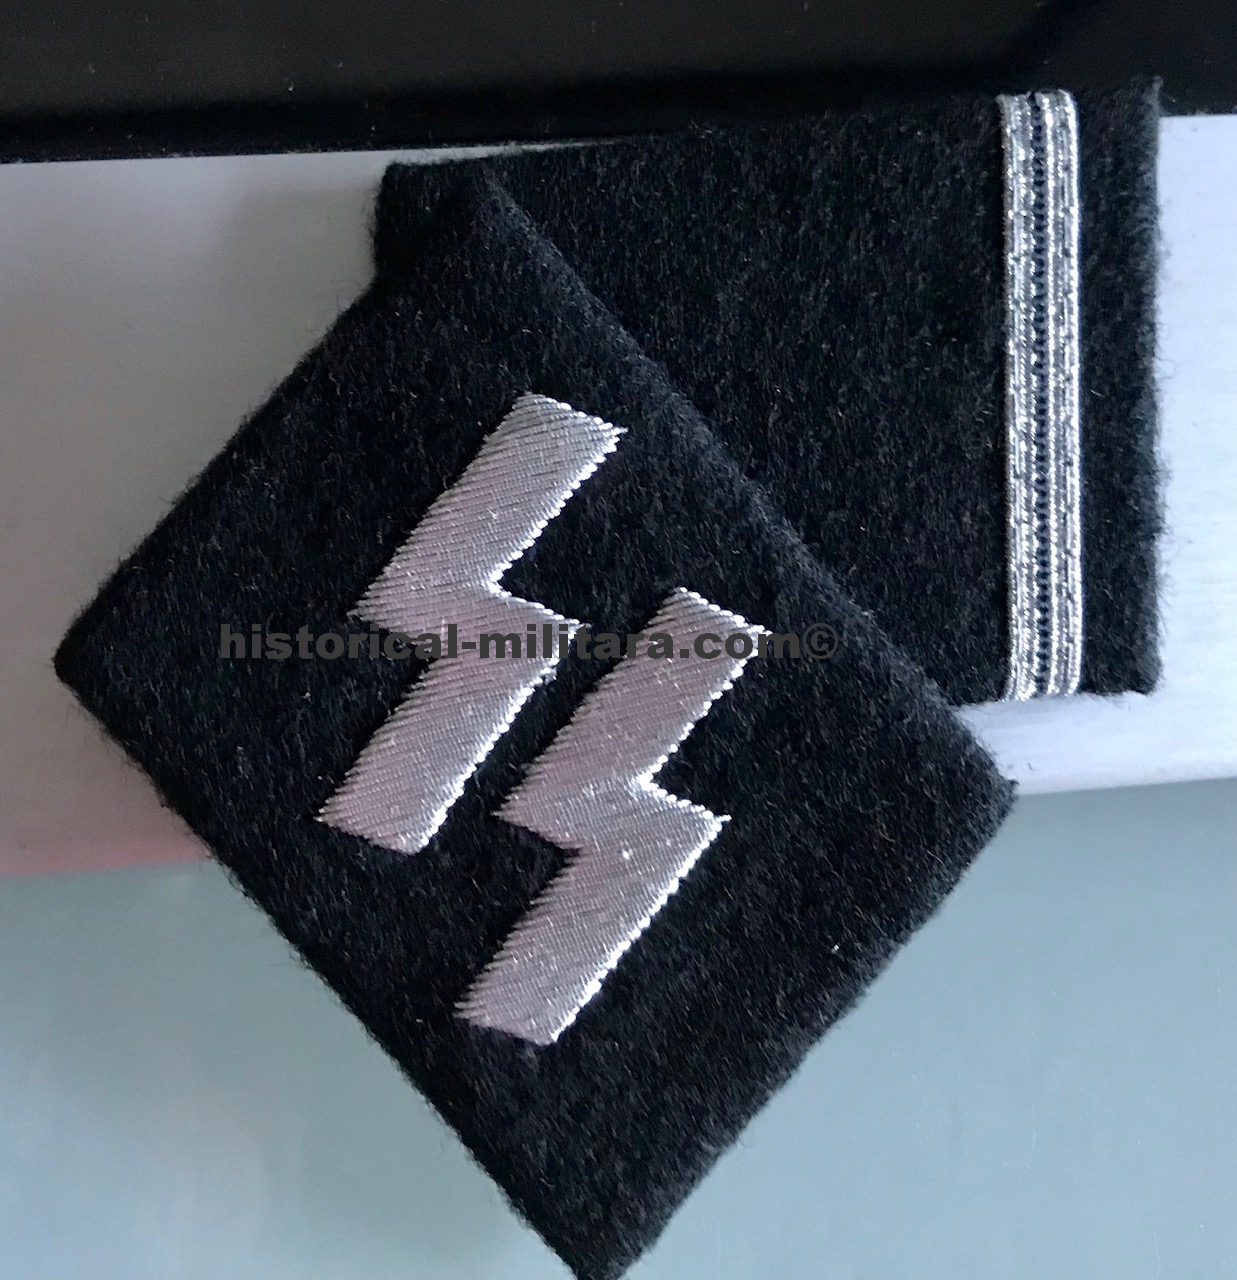 SS-Sturmmann Waffen-SS Kragenspiegel - Private First Class SS collar tabs - mostrine da Caporale delle Waffen-SS - 1 pair left on stock